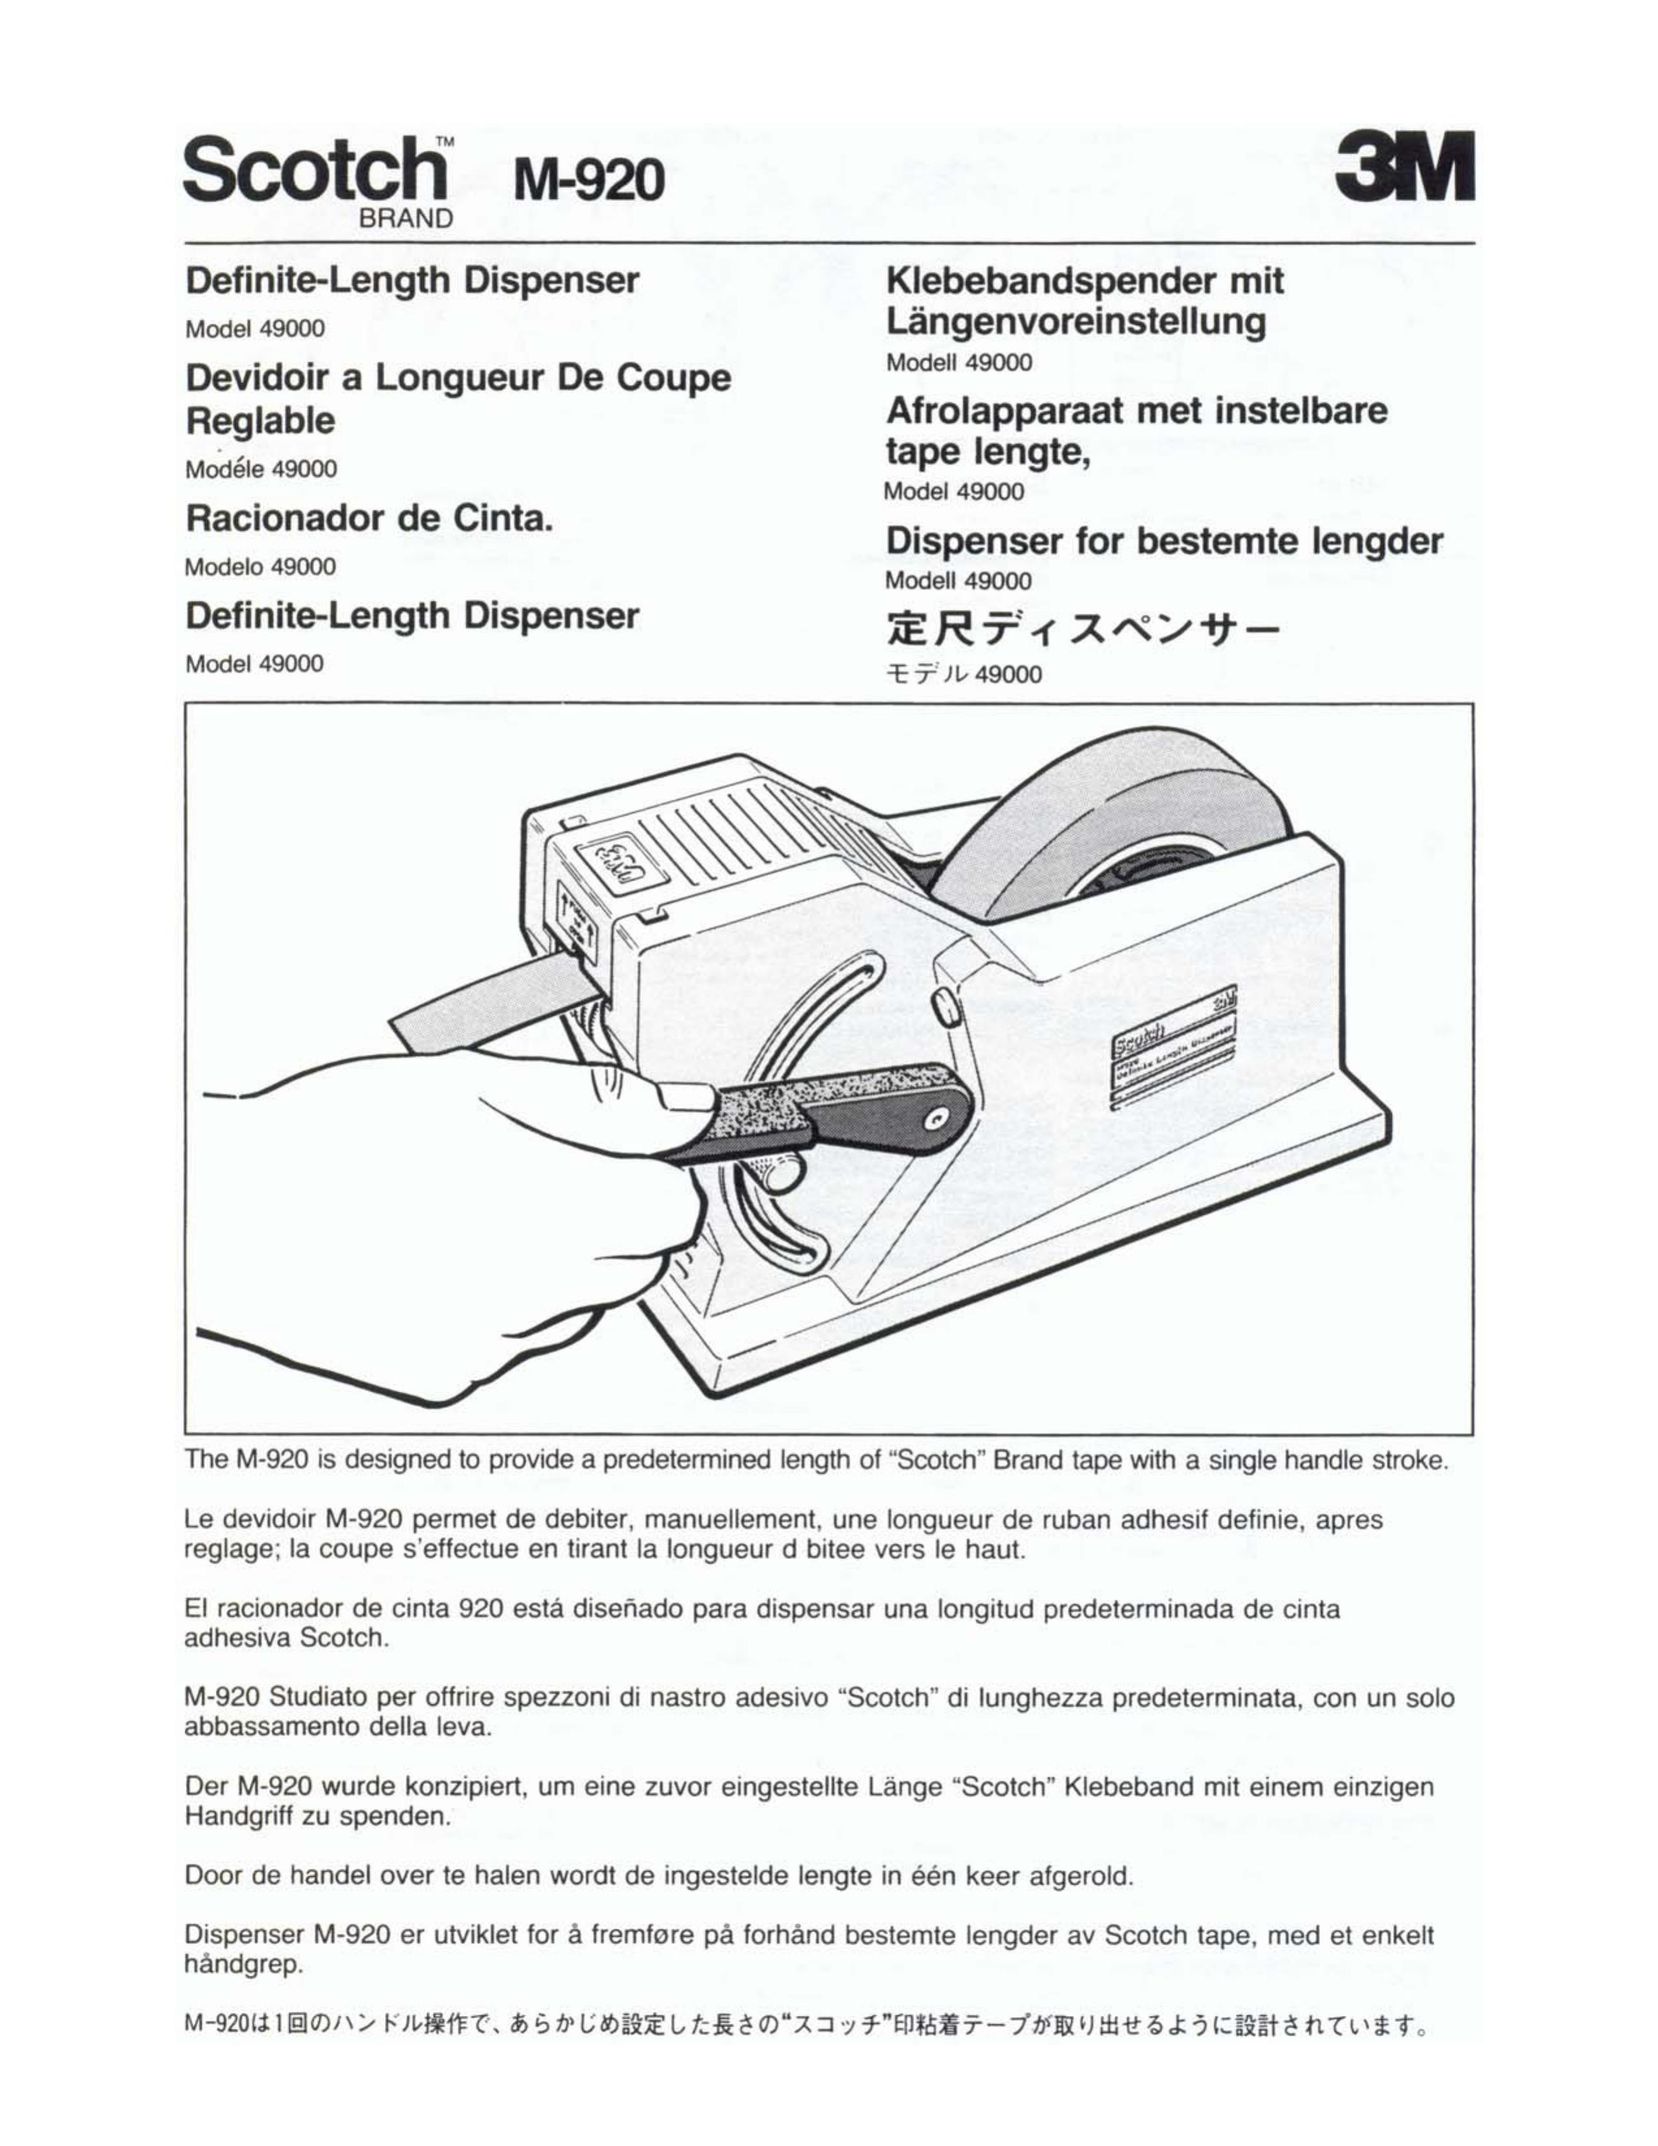 3M M-920 VCR User Manual